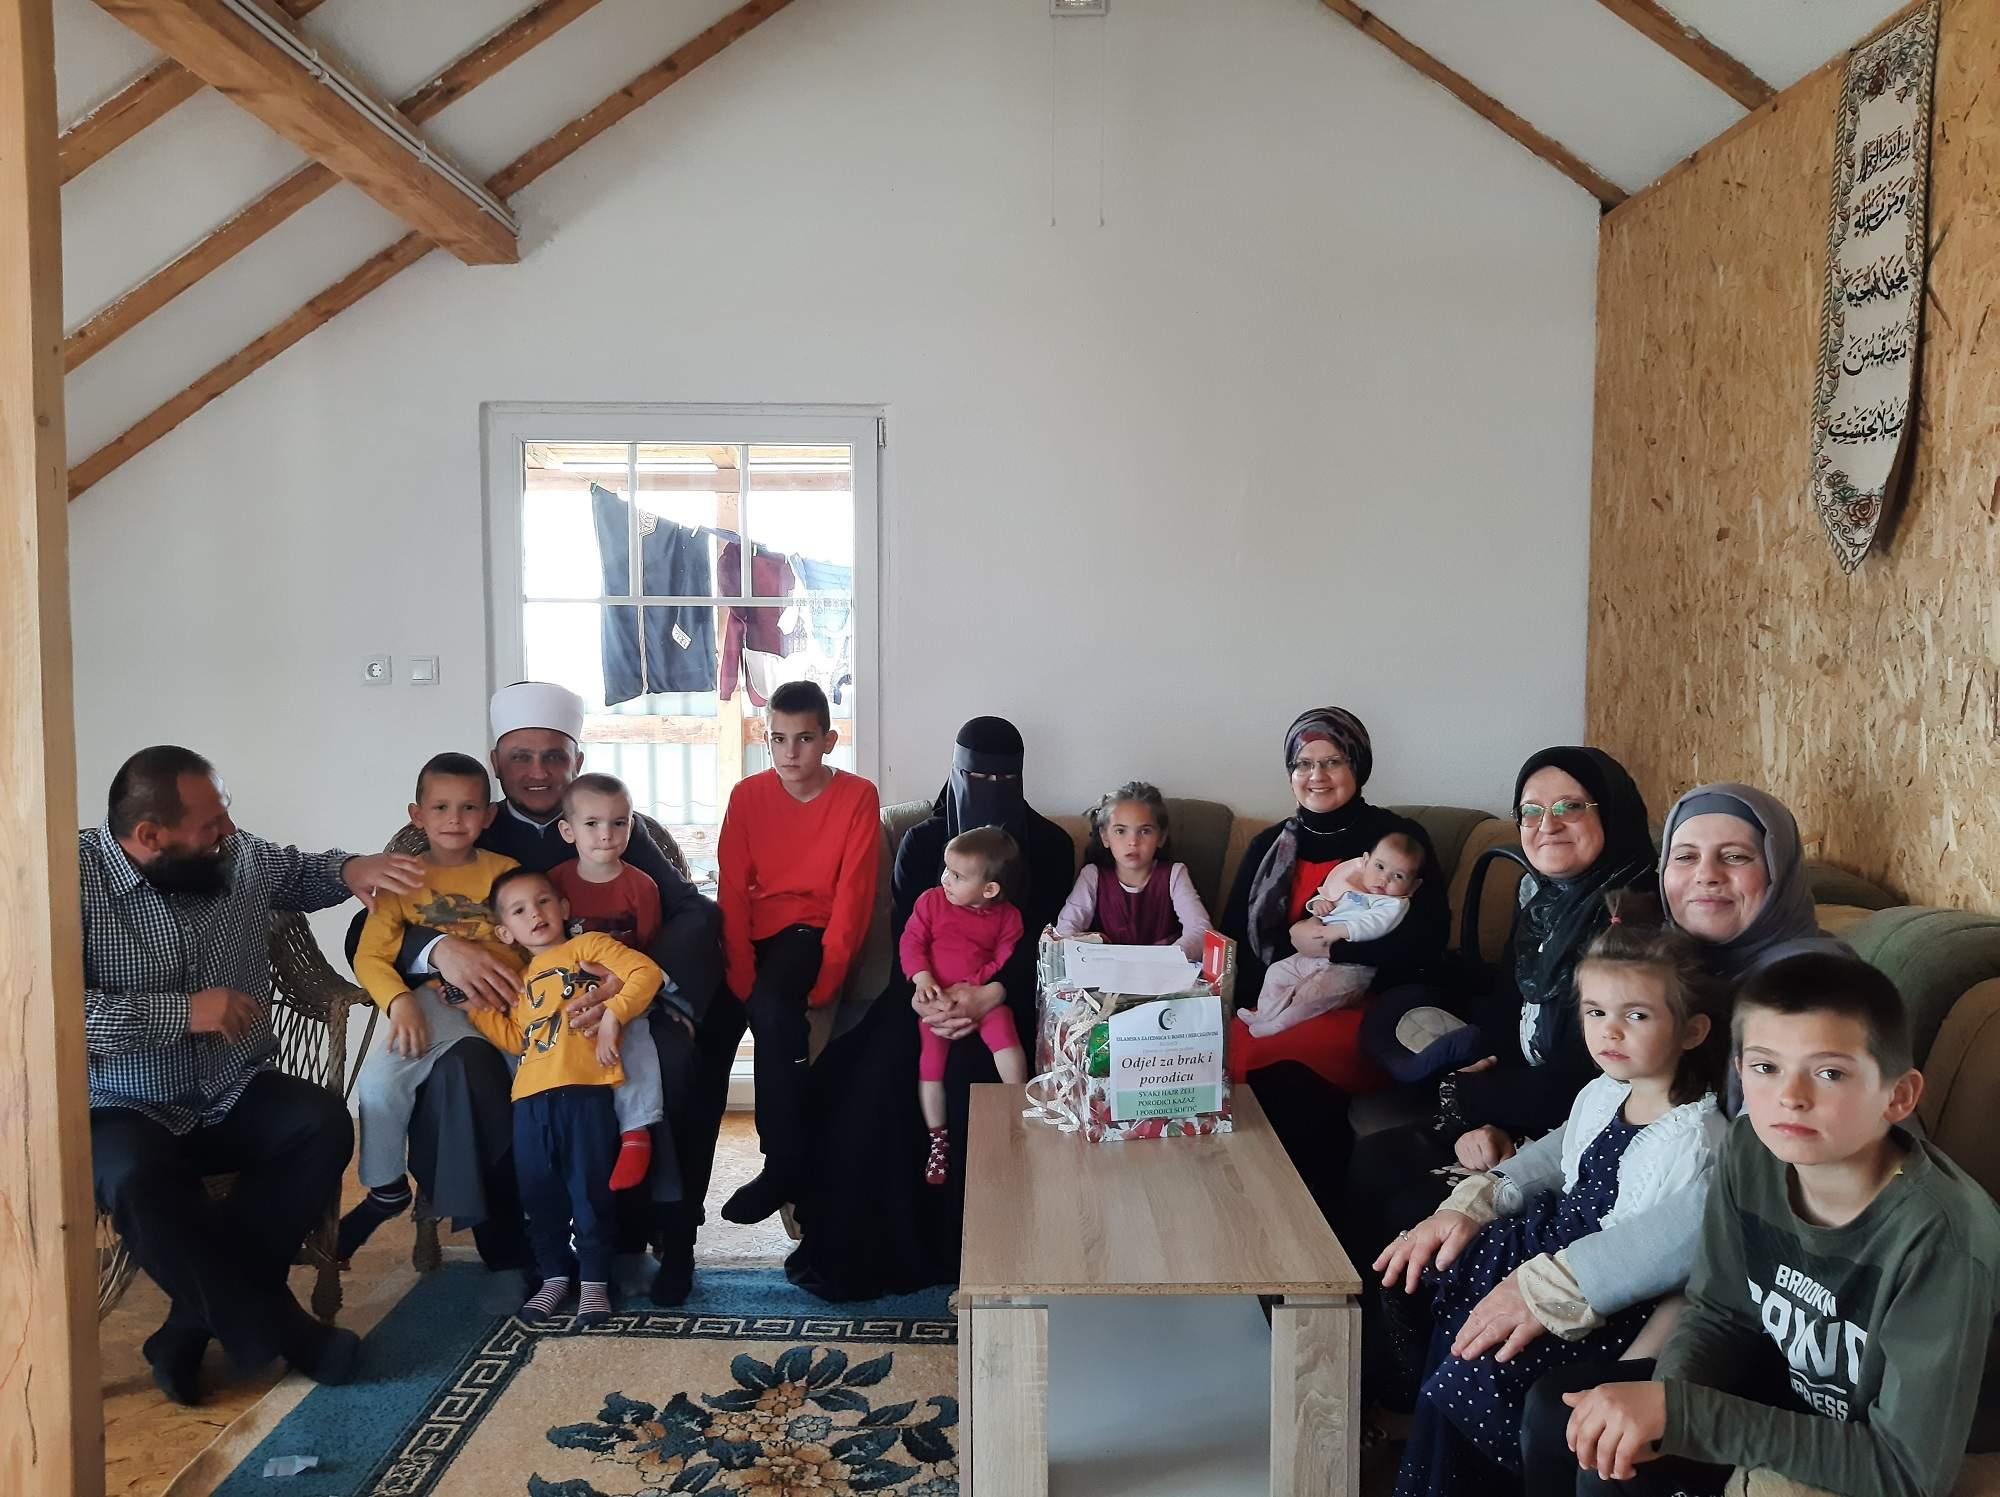 Ovom prilikom dr. Malkić posjetila je pet porodica kako bi im uručila poklon reisul-uleme - Avaz